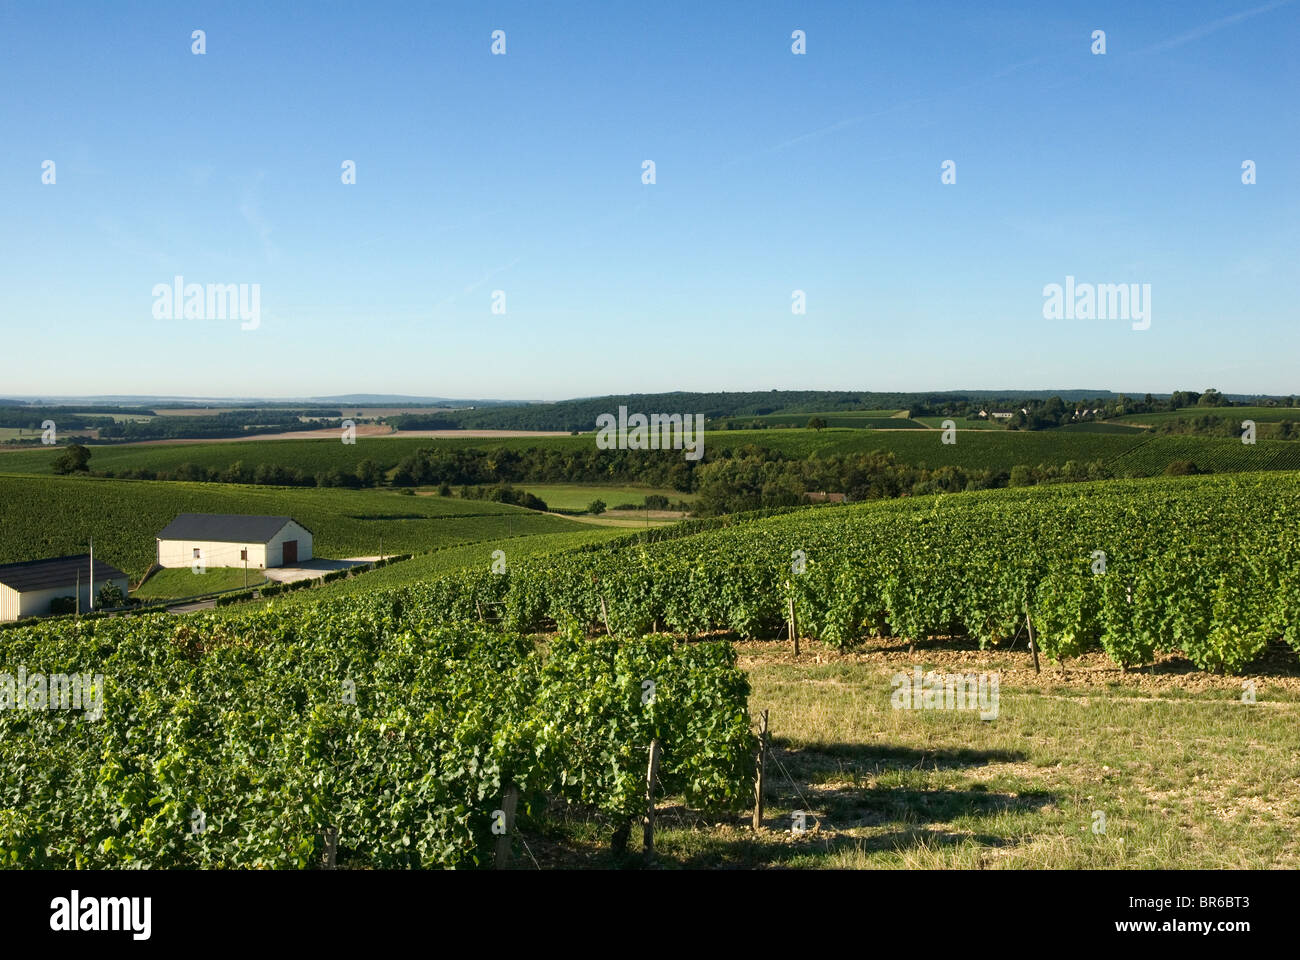 View looking south from Crezancy across Sancerre vinyards Stock Photo